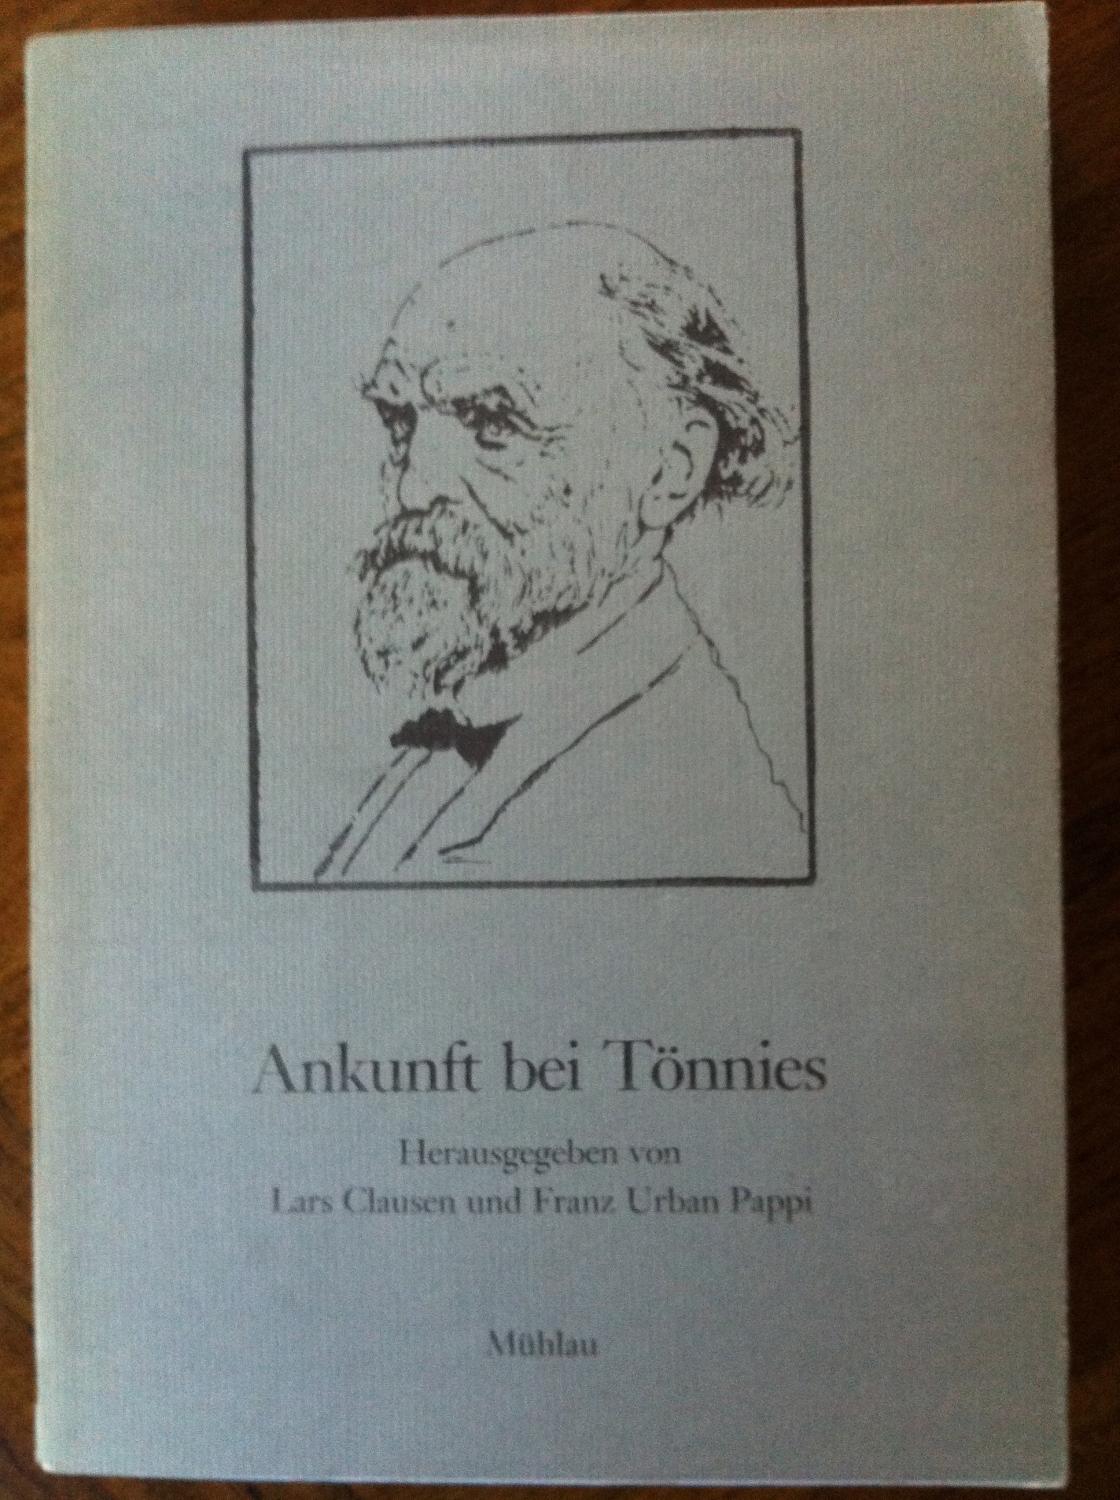 Ankunft bei Tonnies: Soziologische Beitrage zum 125. Geburtstag von Ferdinand Tonnies (German Edition)